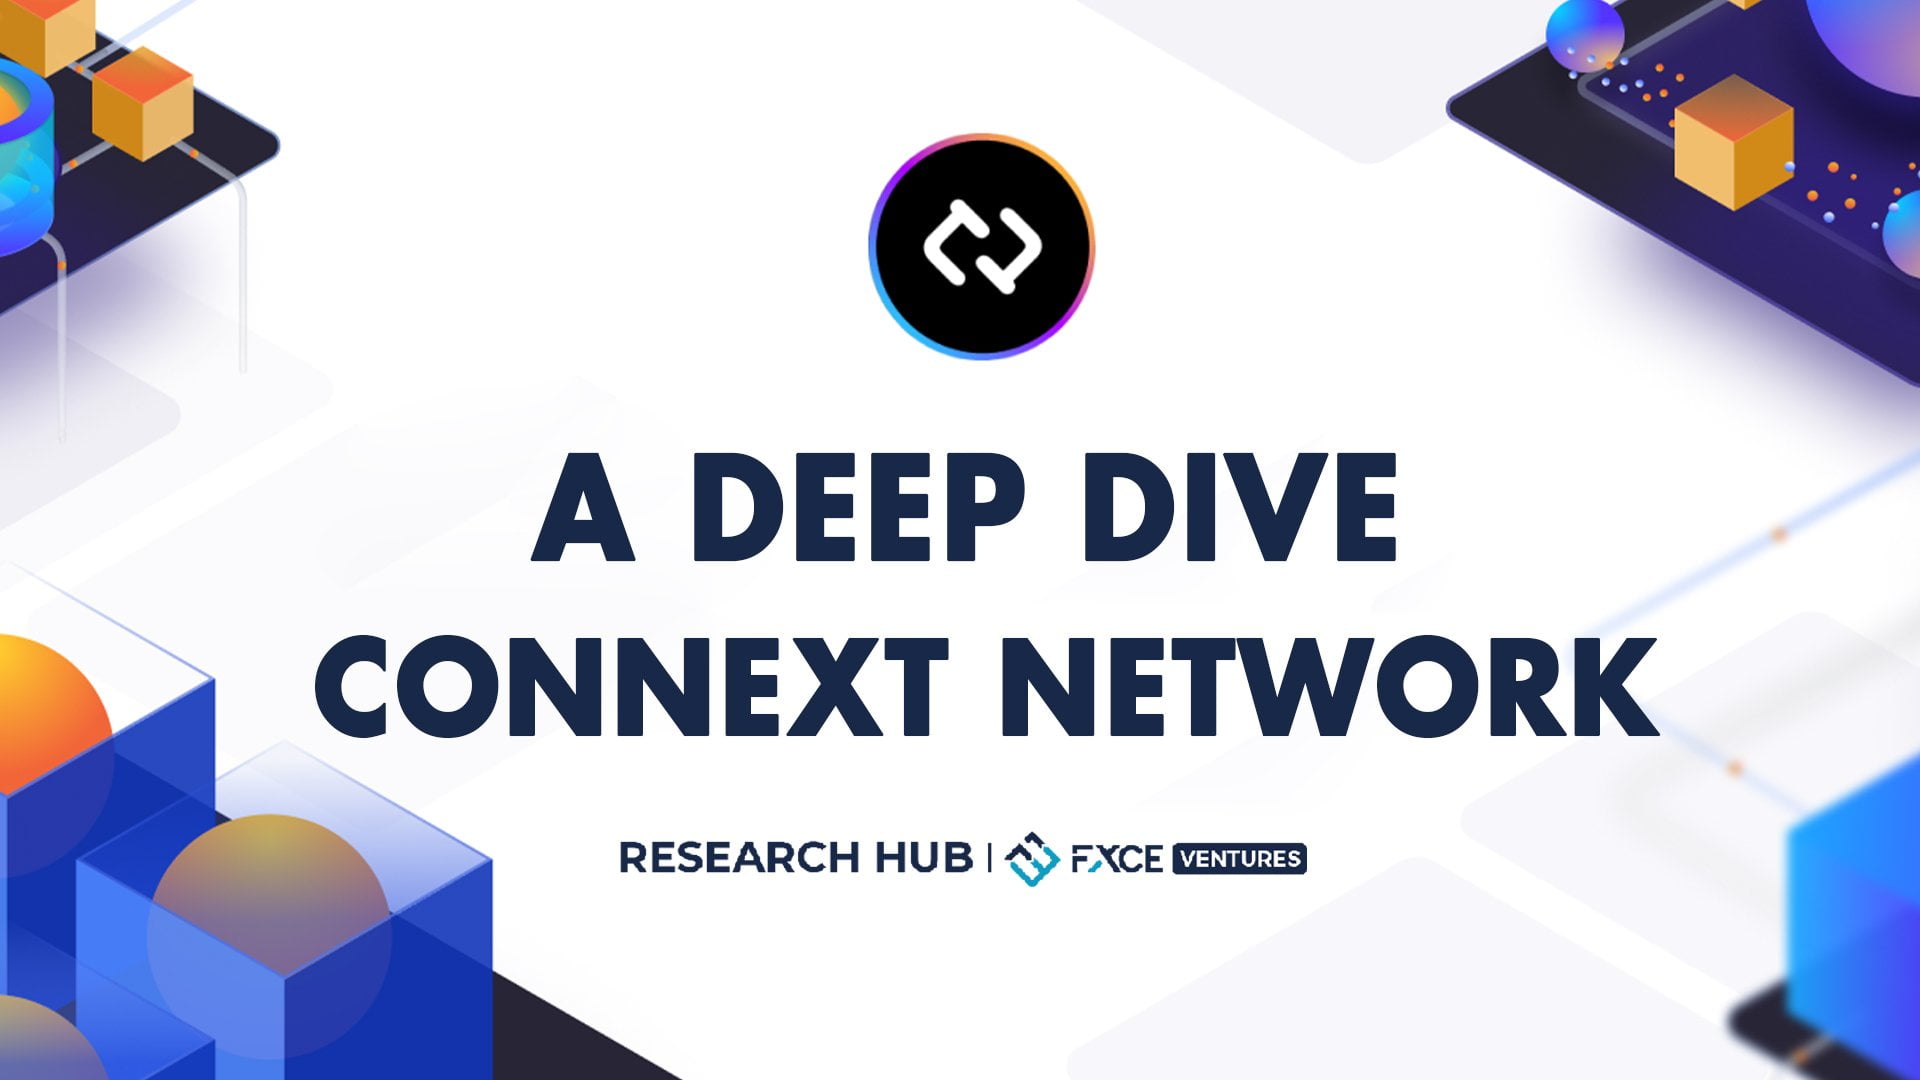 A Deep Dive Connext Network